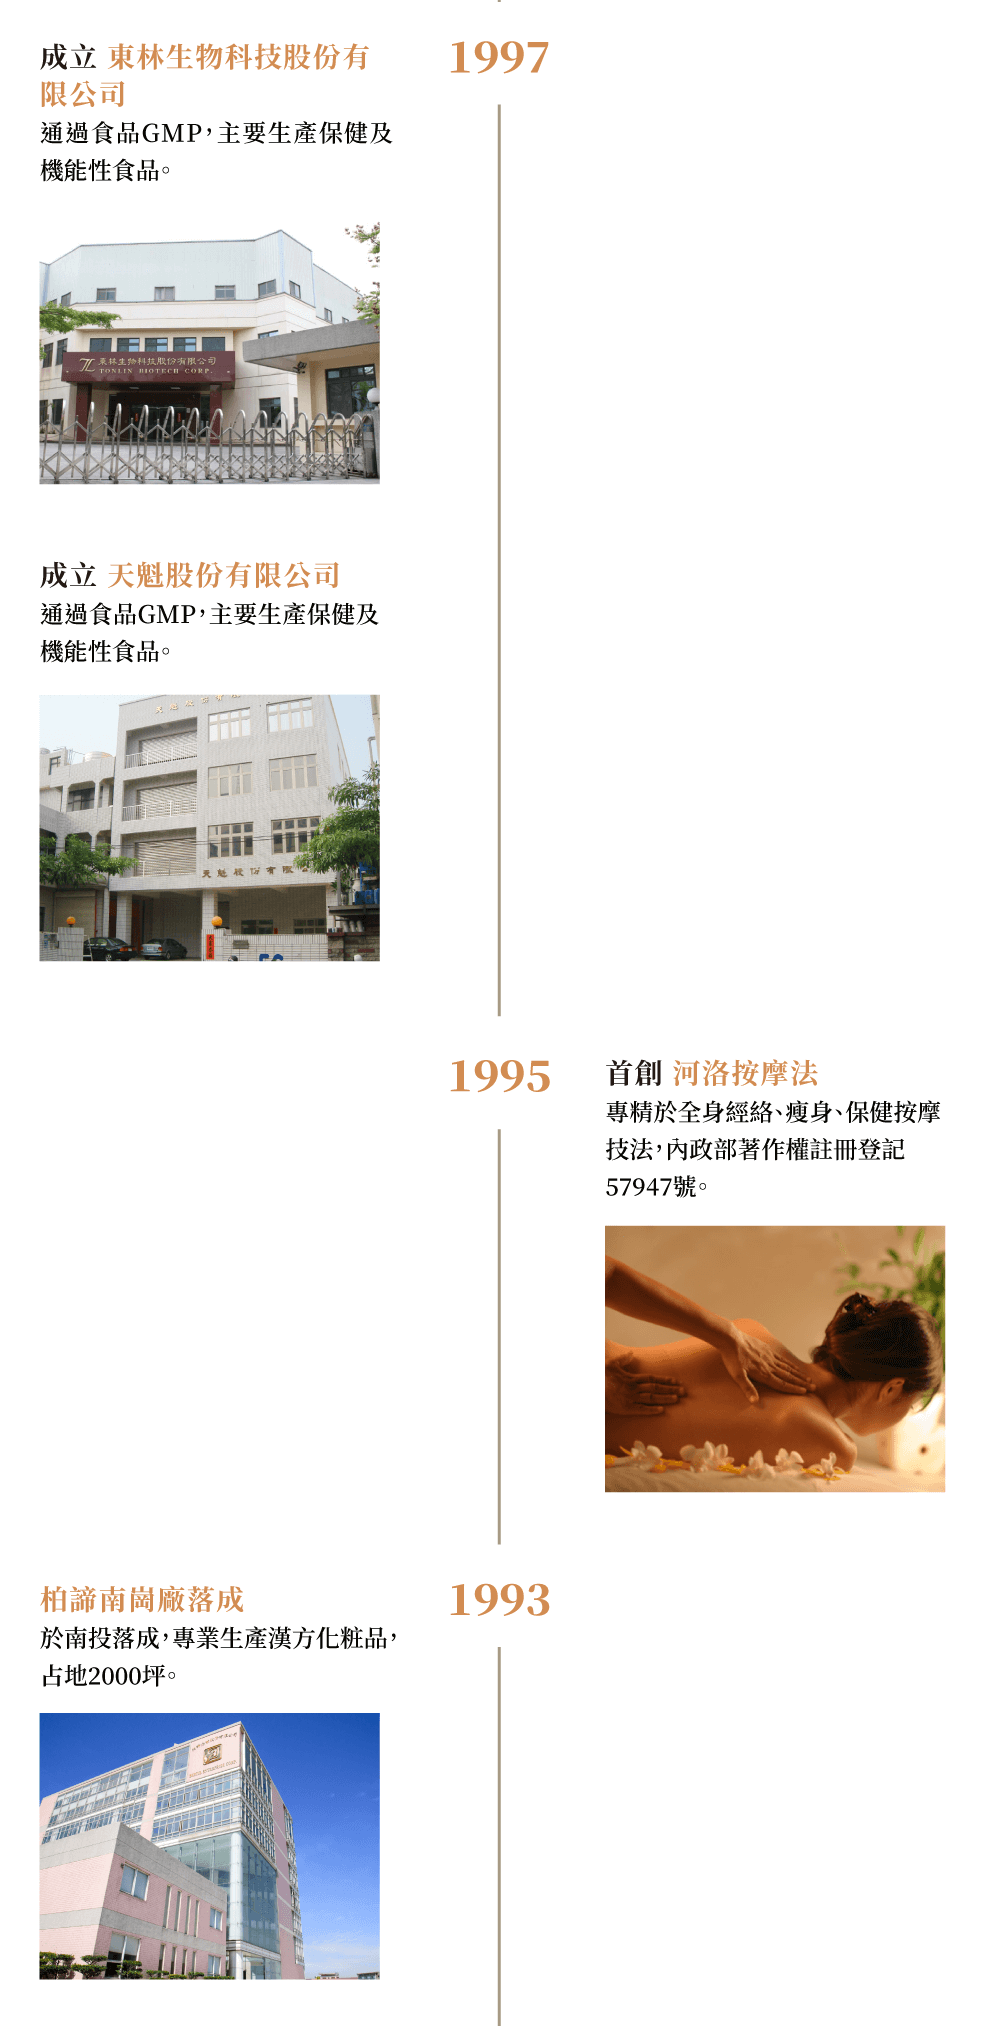 1993-1997年間建立南崗工廠專營漢方化妝品生產，並首創河洛按摩法專精全身經絡按摩技法，成立天魁及東林2間工廠生產保健及機能性食品